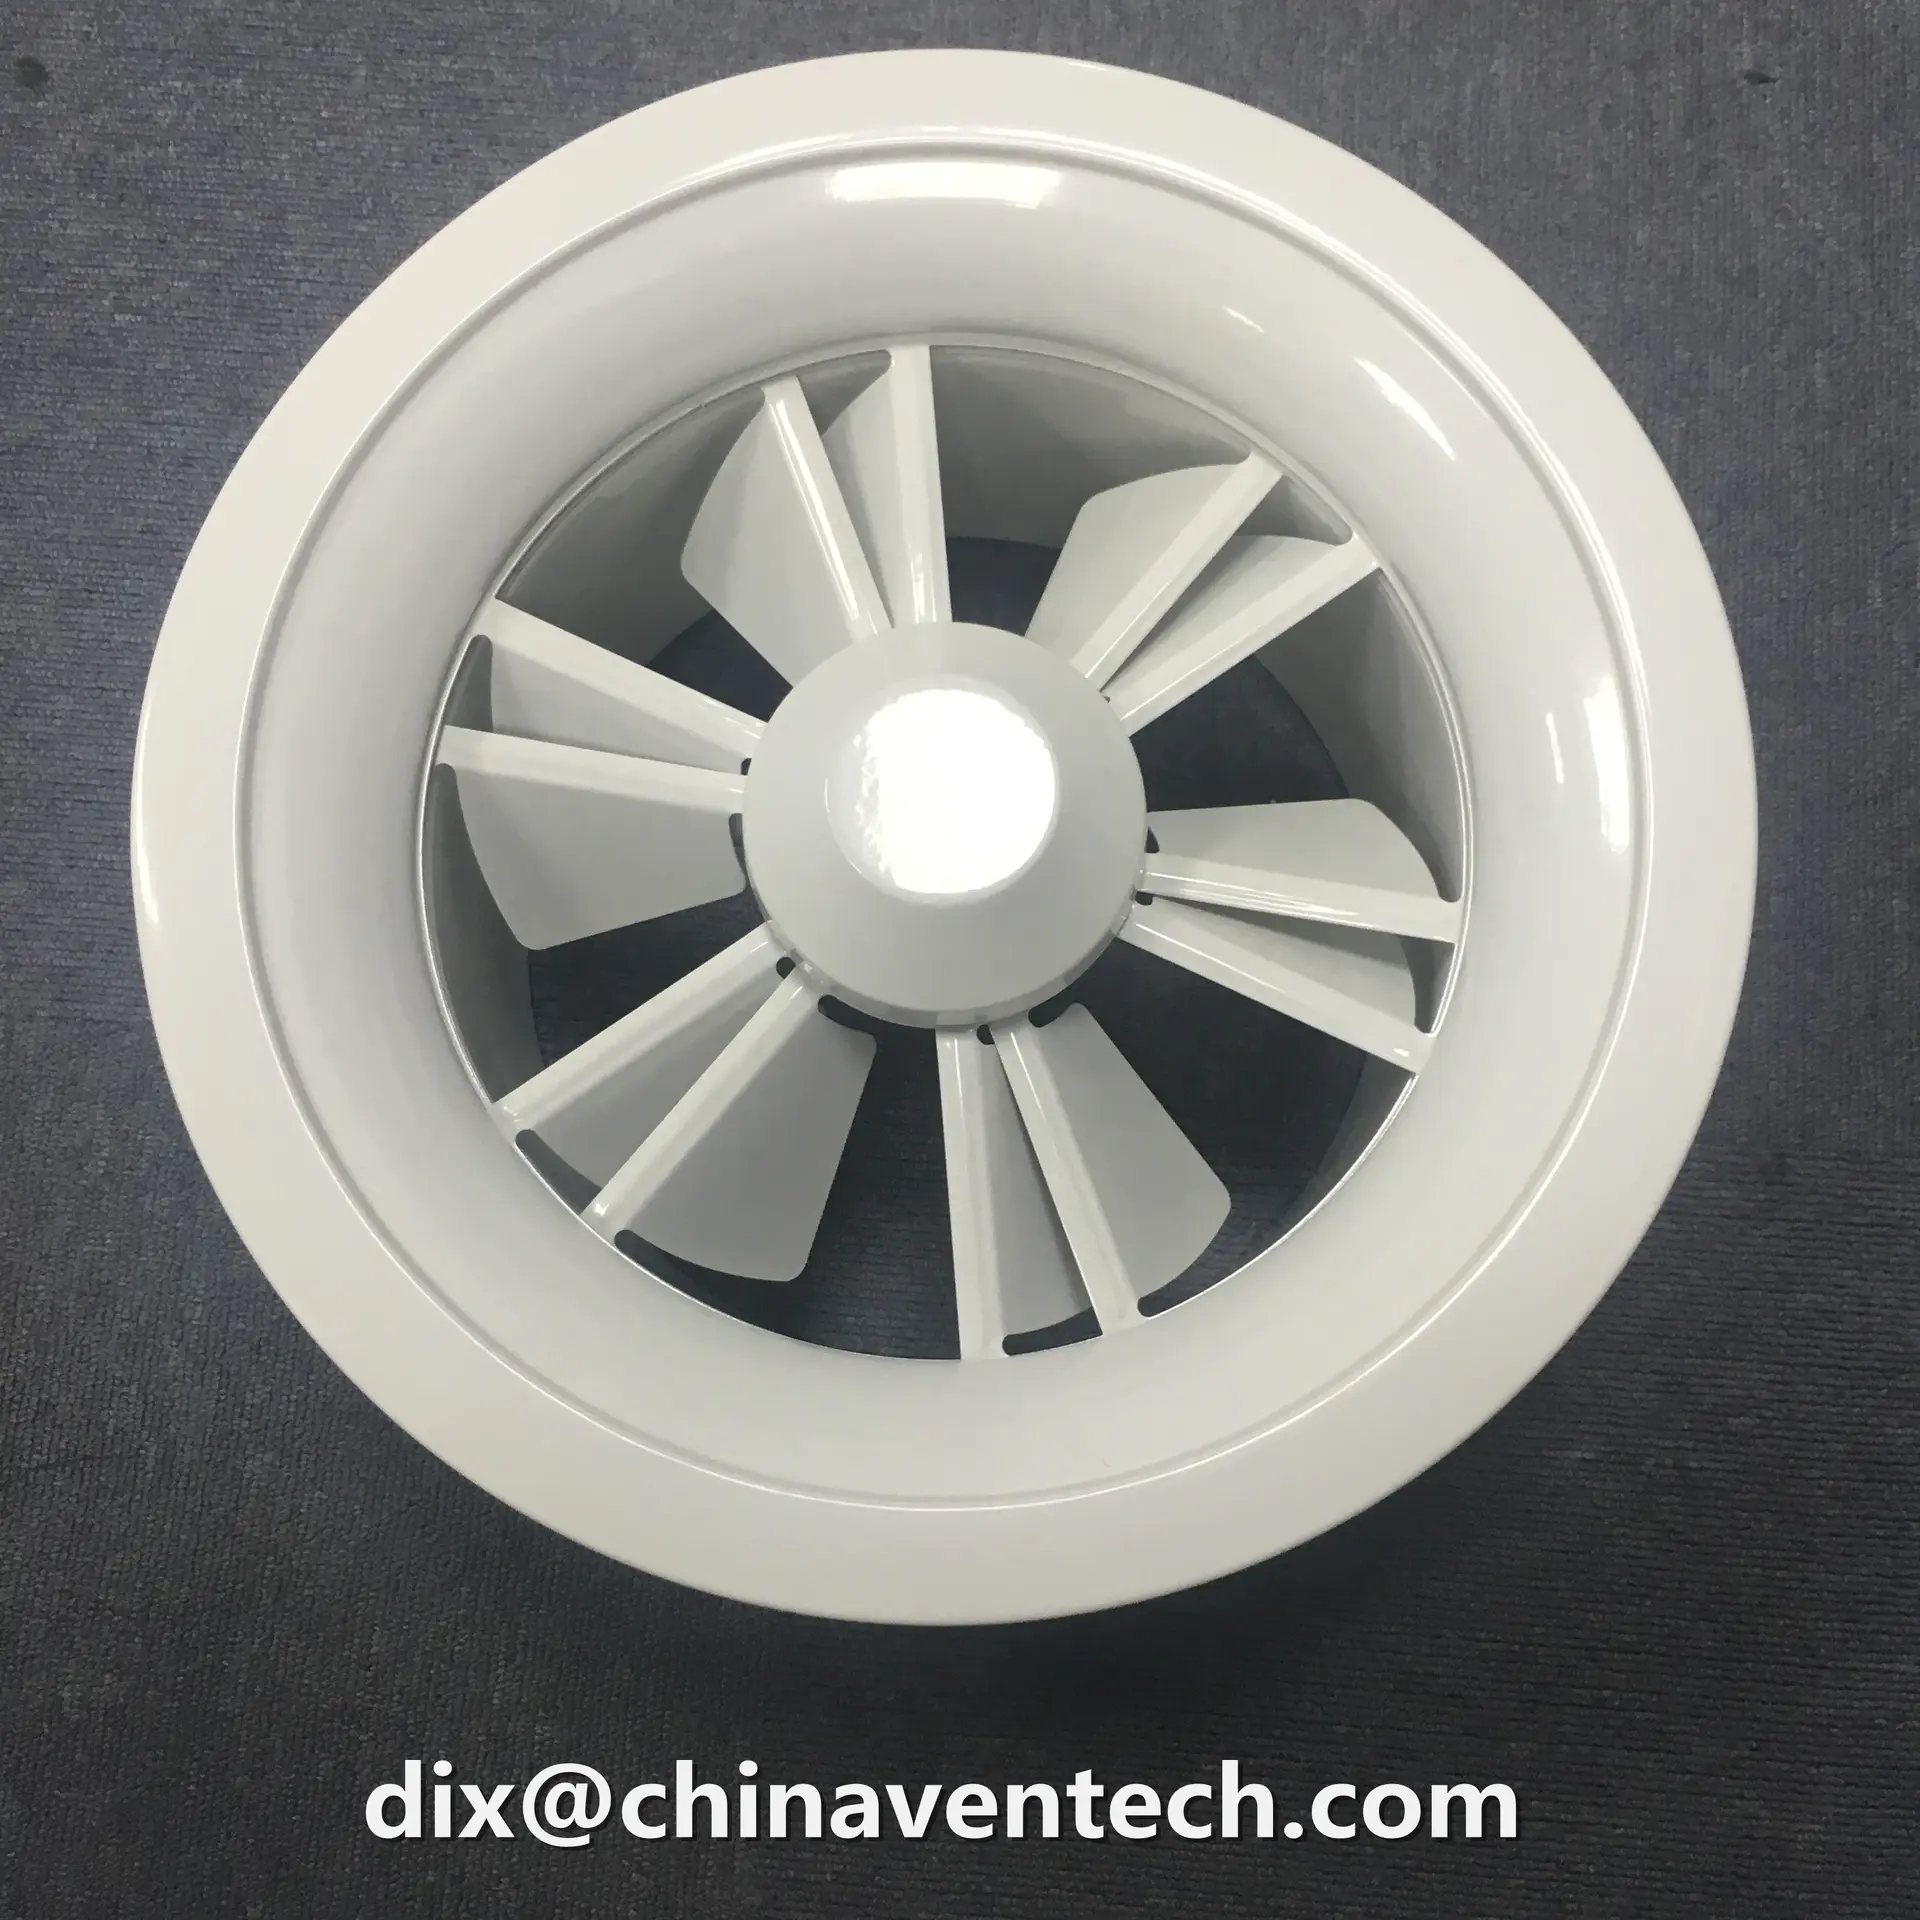 hvac aluminum round jet nozzle volume control circular swirl diffuser